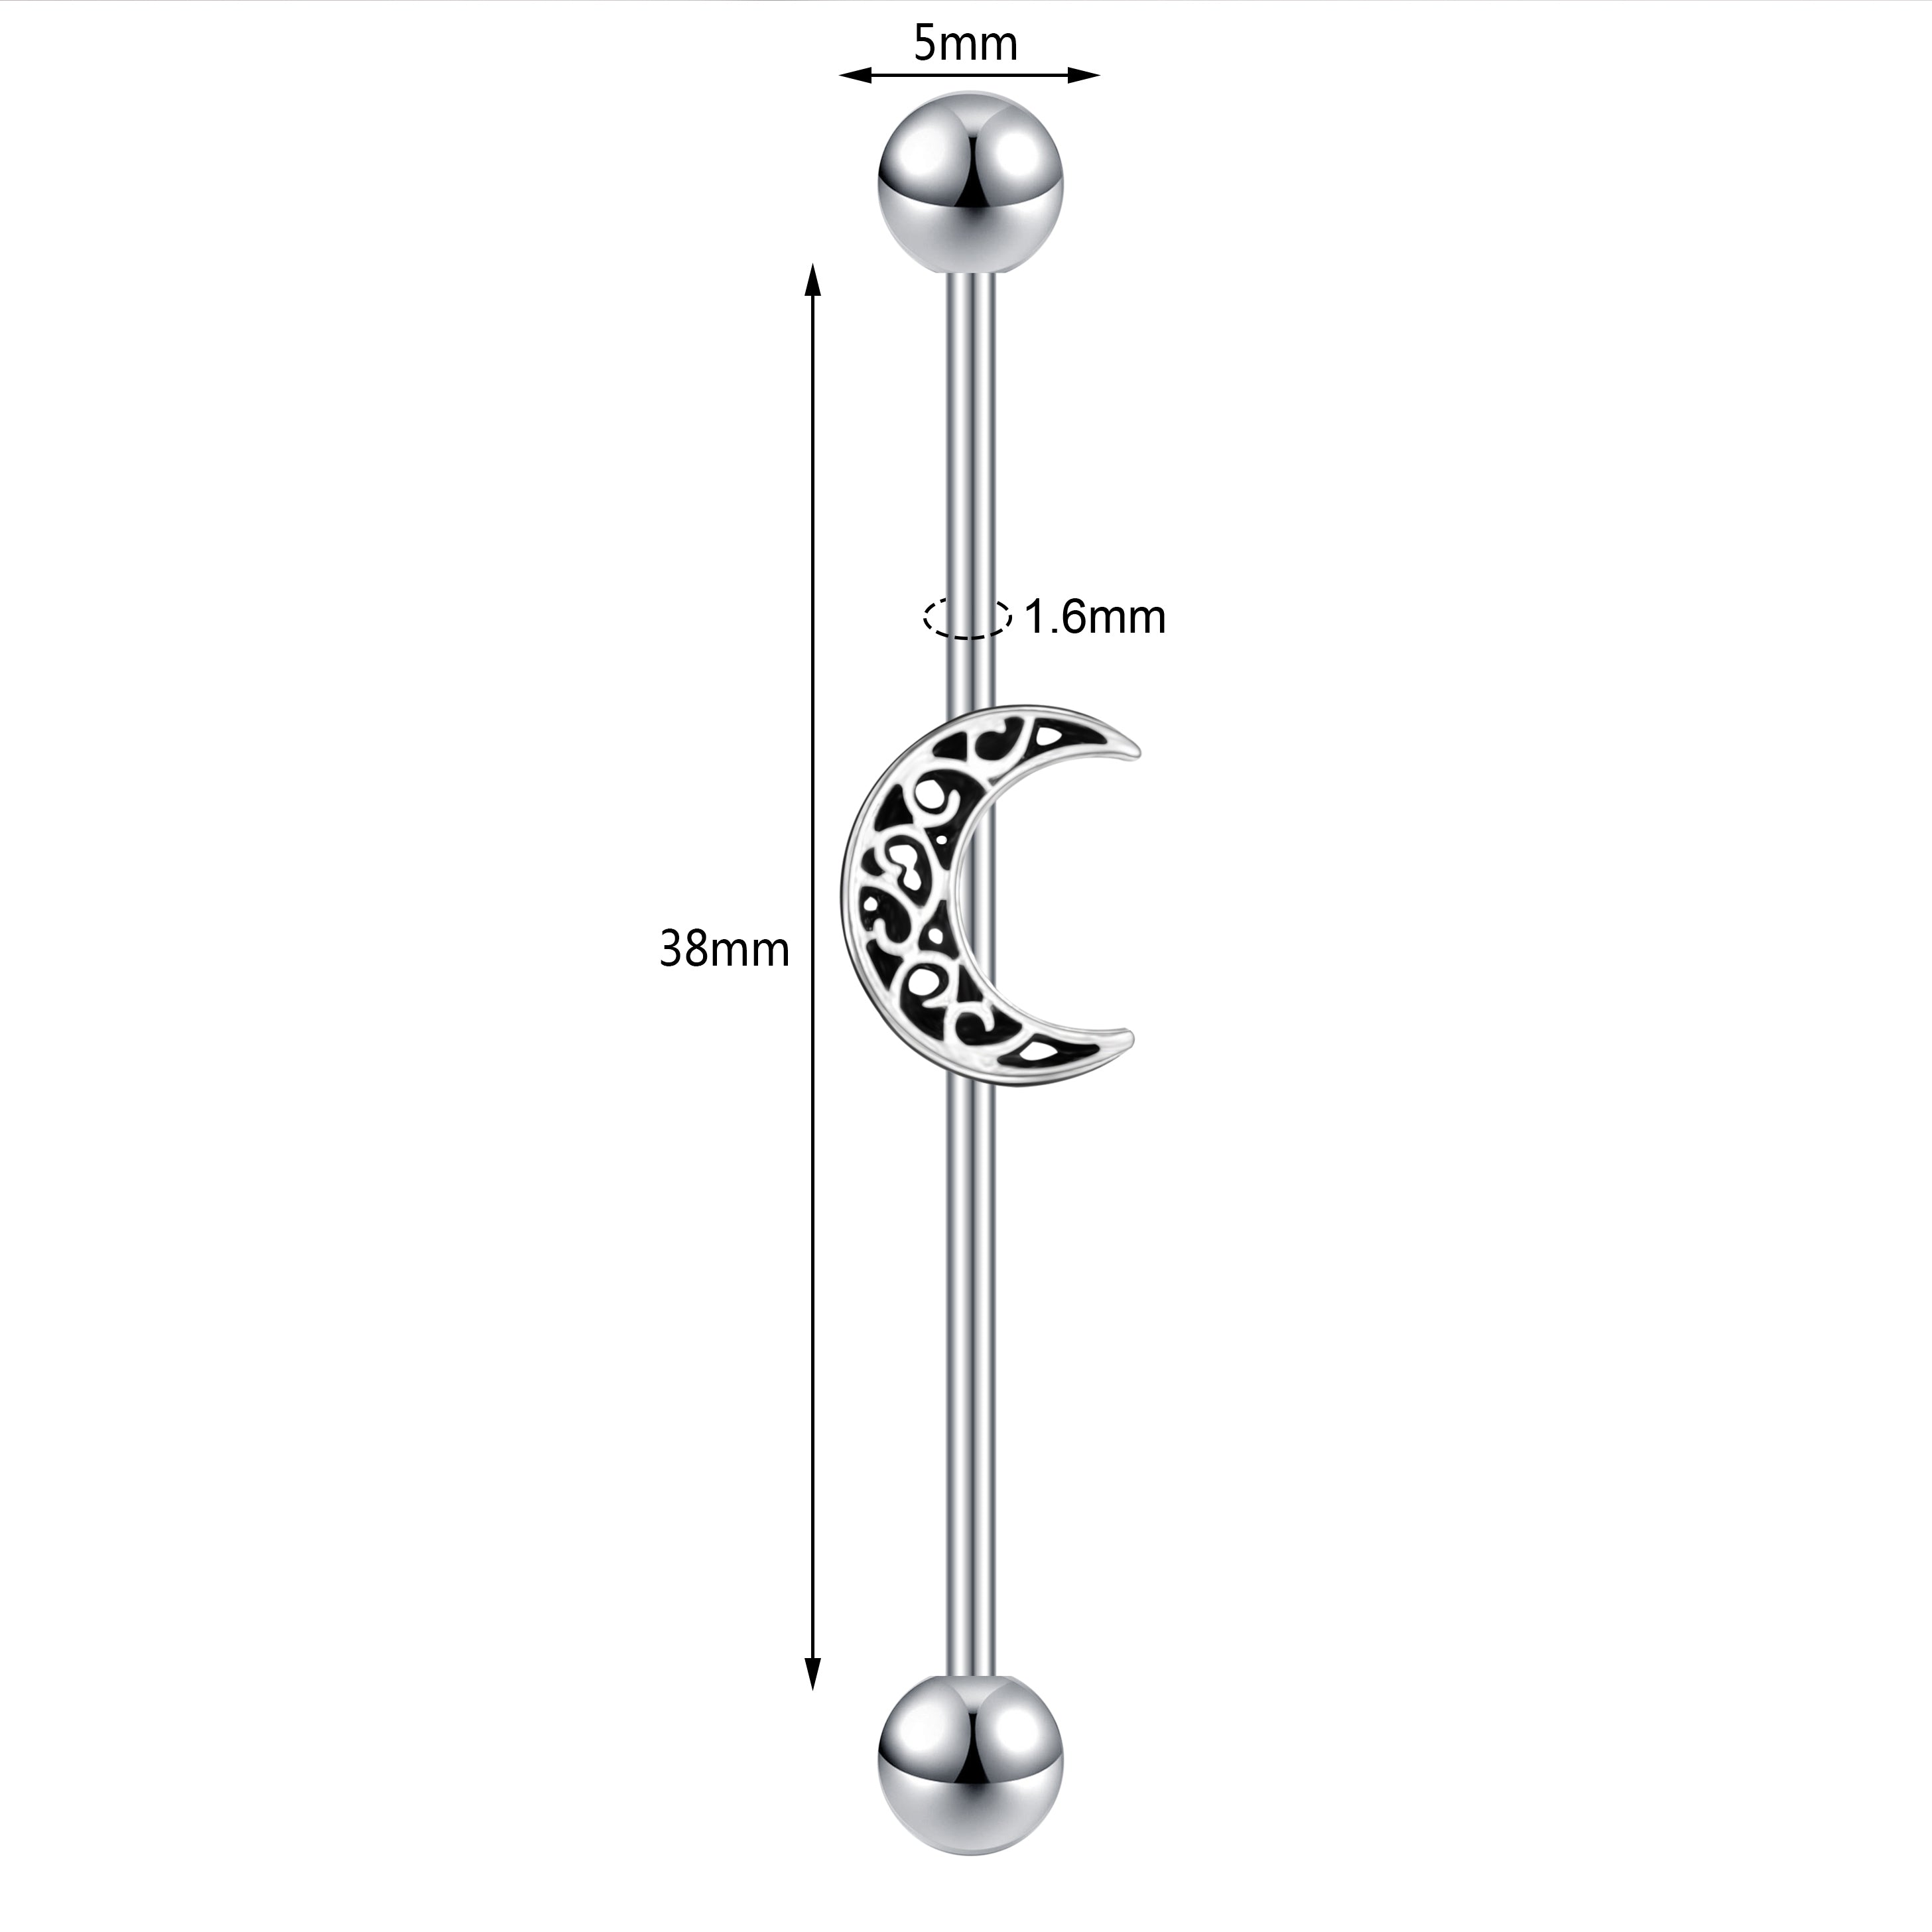 14g-moon-industrial-barbell-earring-simple-ear-helix-piercing